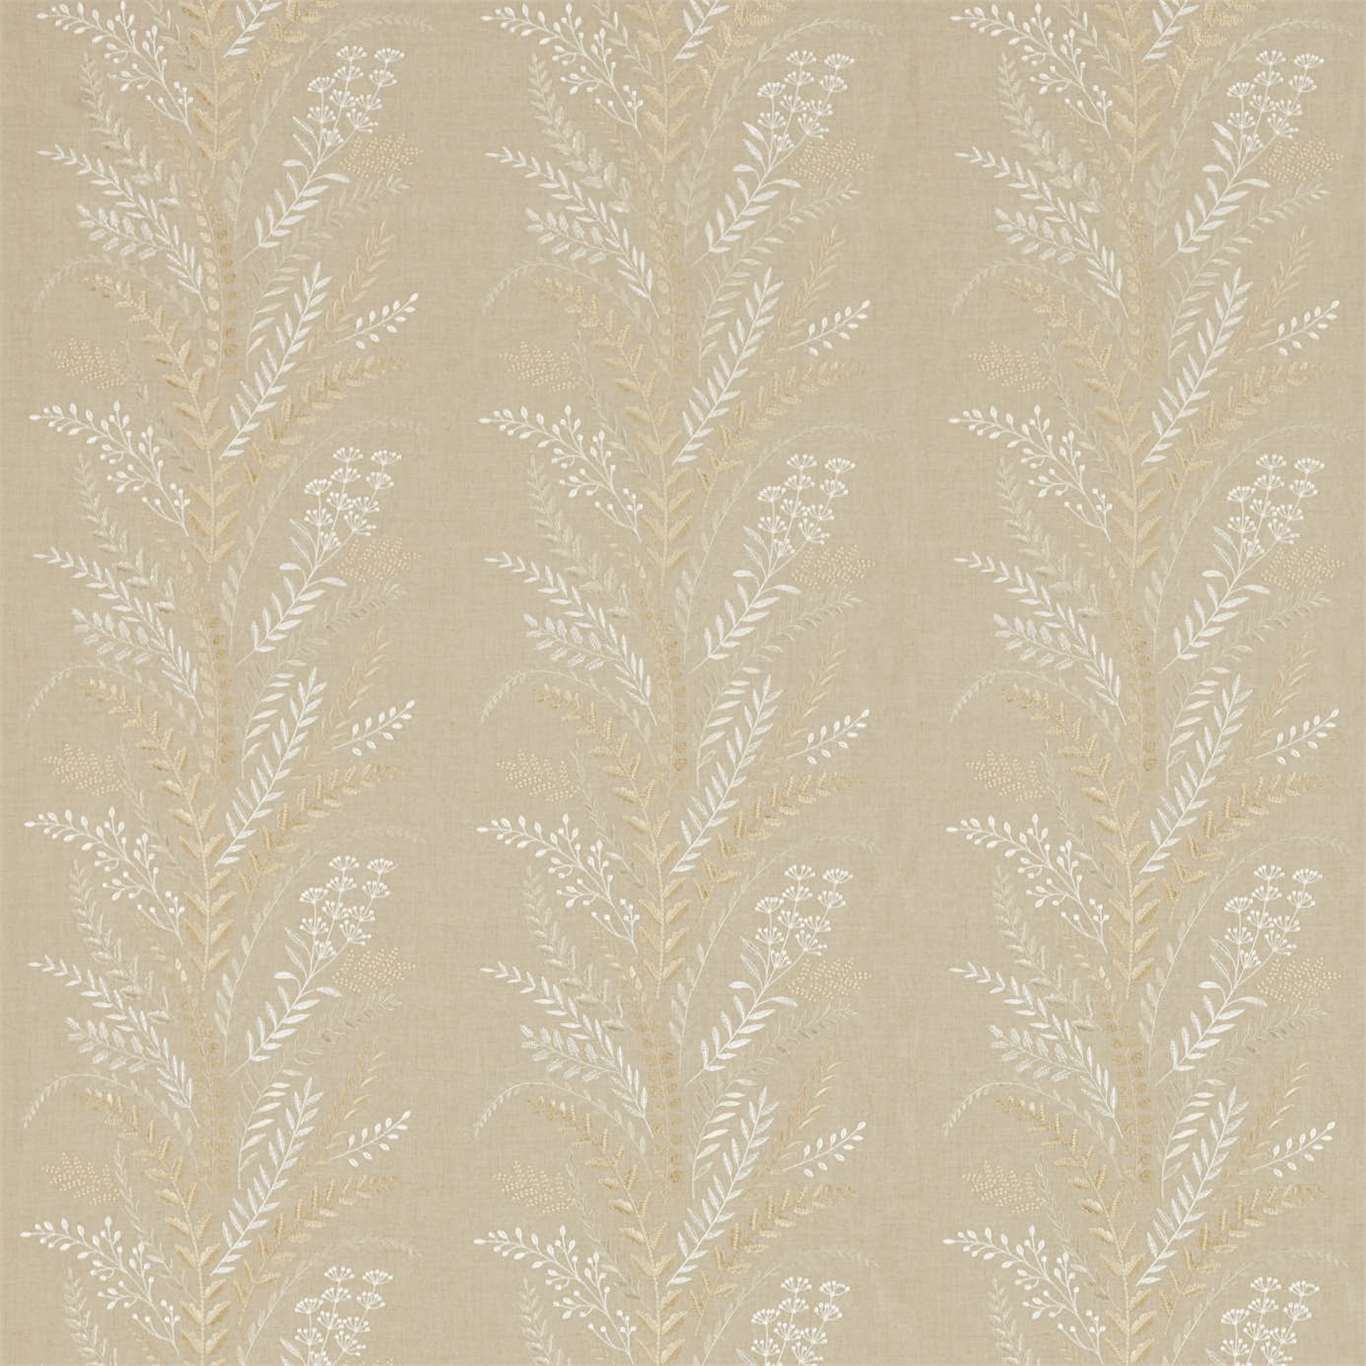 Belsay Fabric by Sanderson - DEBB236564 - Linen